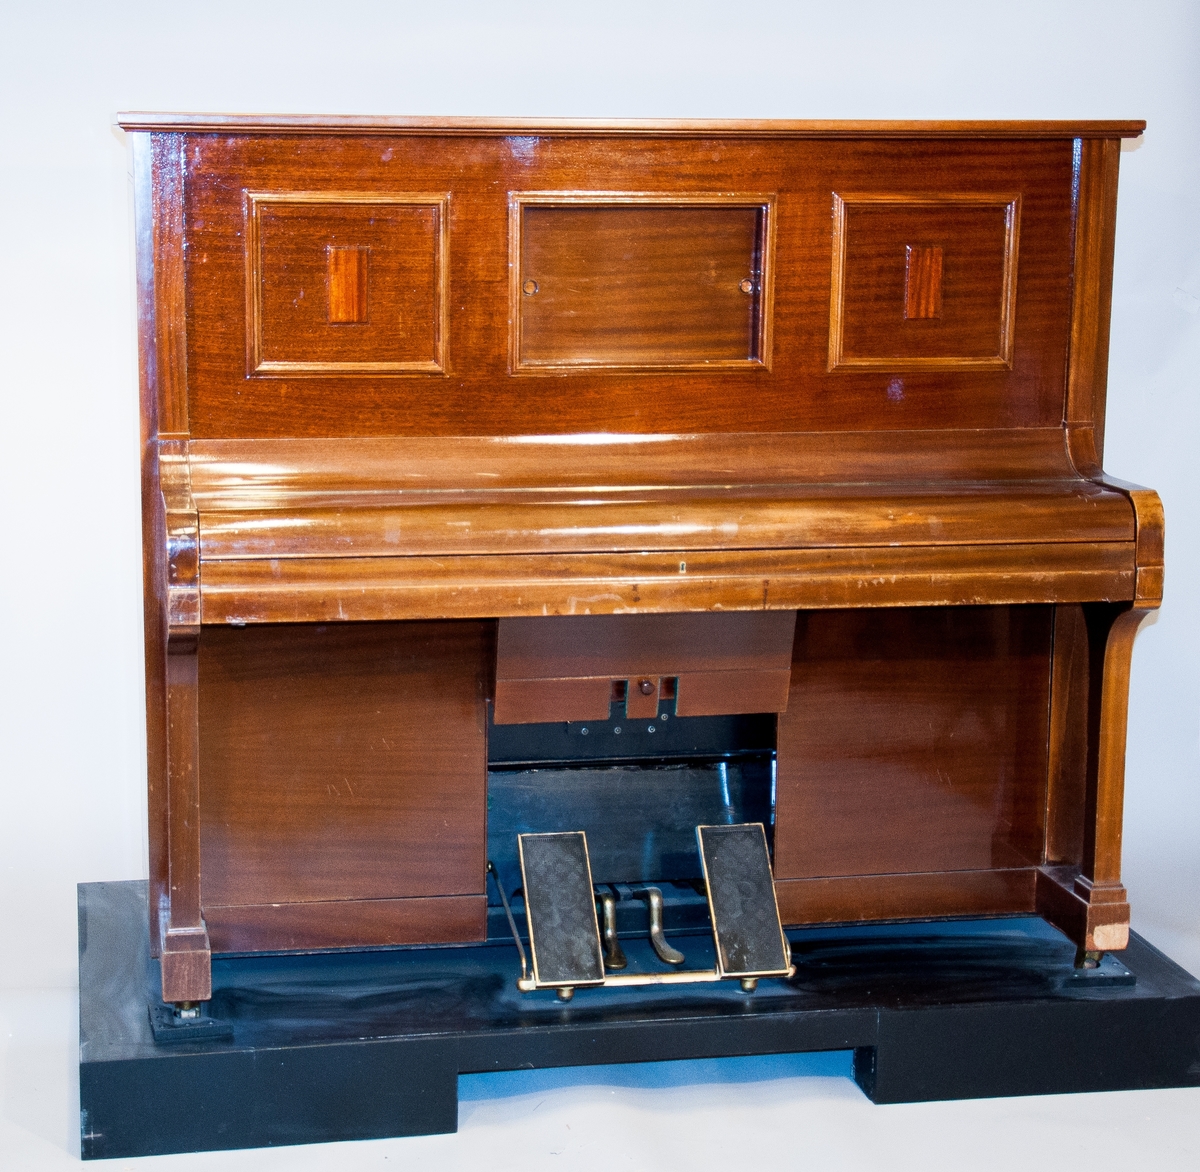 Självspelande piano med Pianola-mekanism. För drift genom trampning. Luftledningar i mekanismen utbytta mot slangar av neopren av tidigare ägare.
Instansatt nr innuti pianot: 41849.